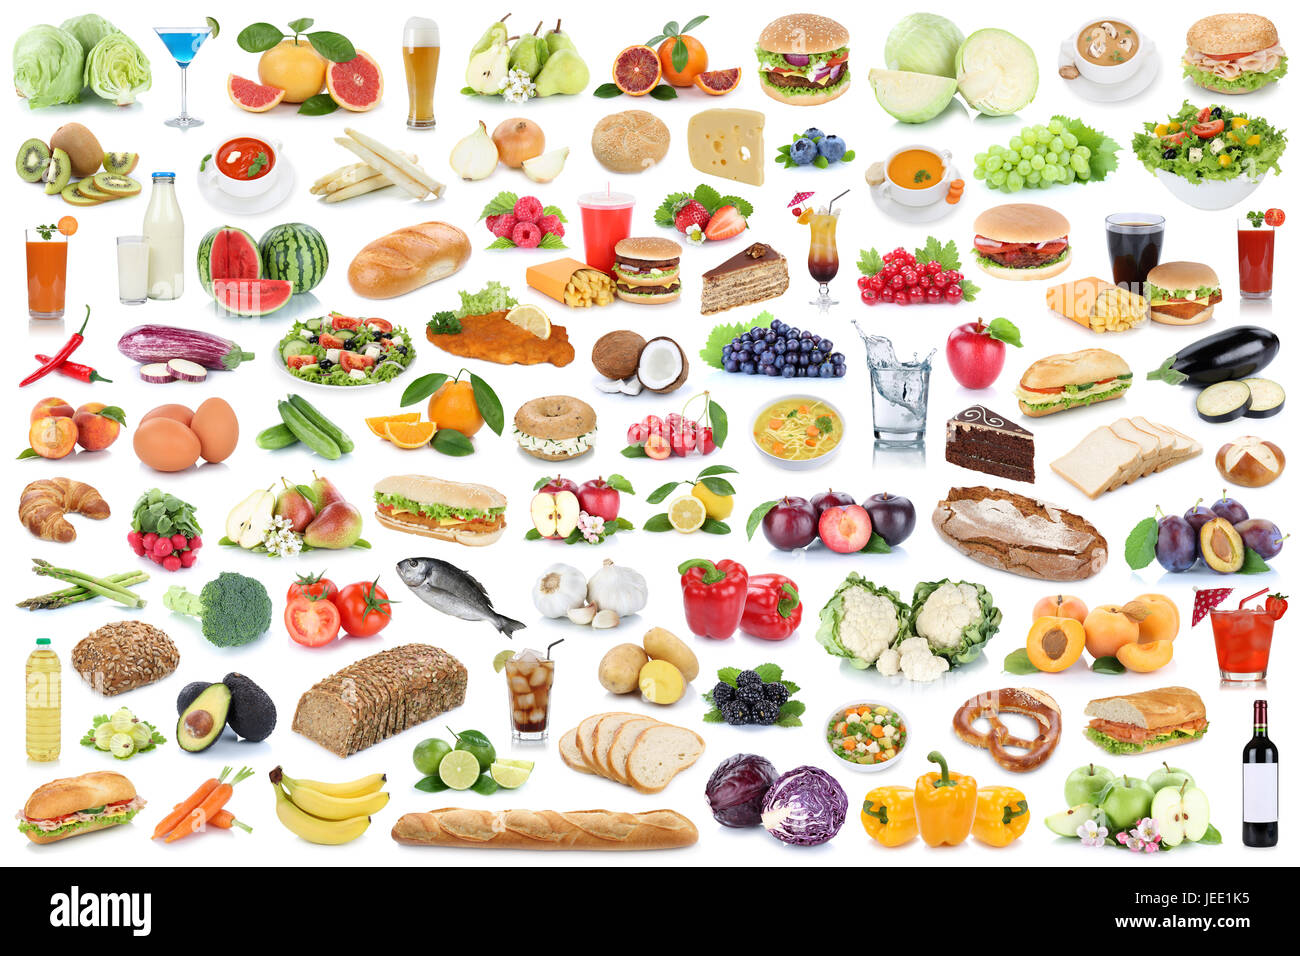 Cibo e bevande insieme collage mangiare sano frutta ortaggi frutta bevande isolato su uno sfondo bianco Foto Stock